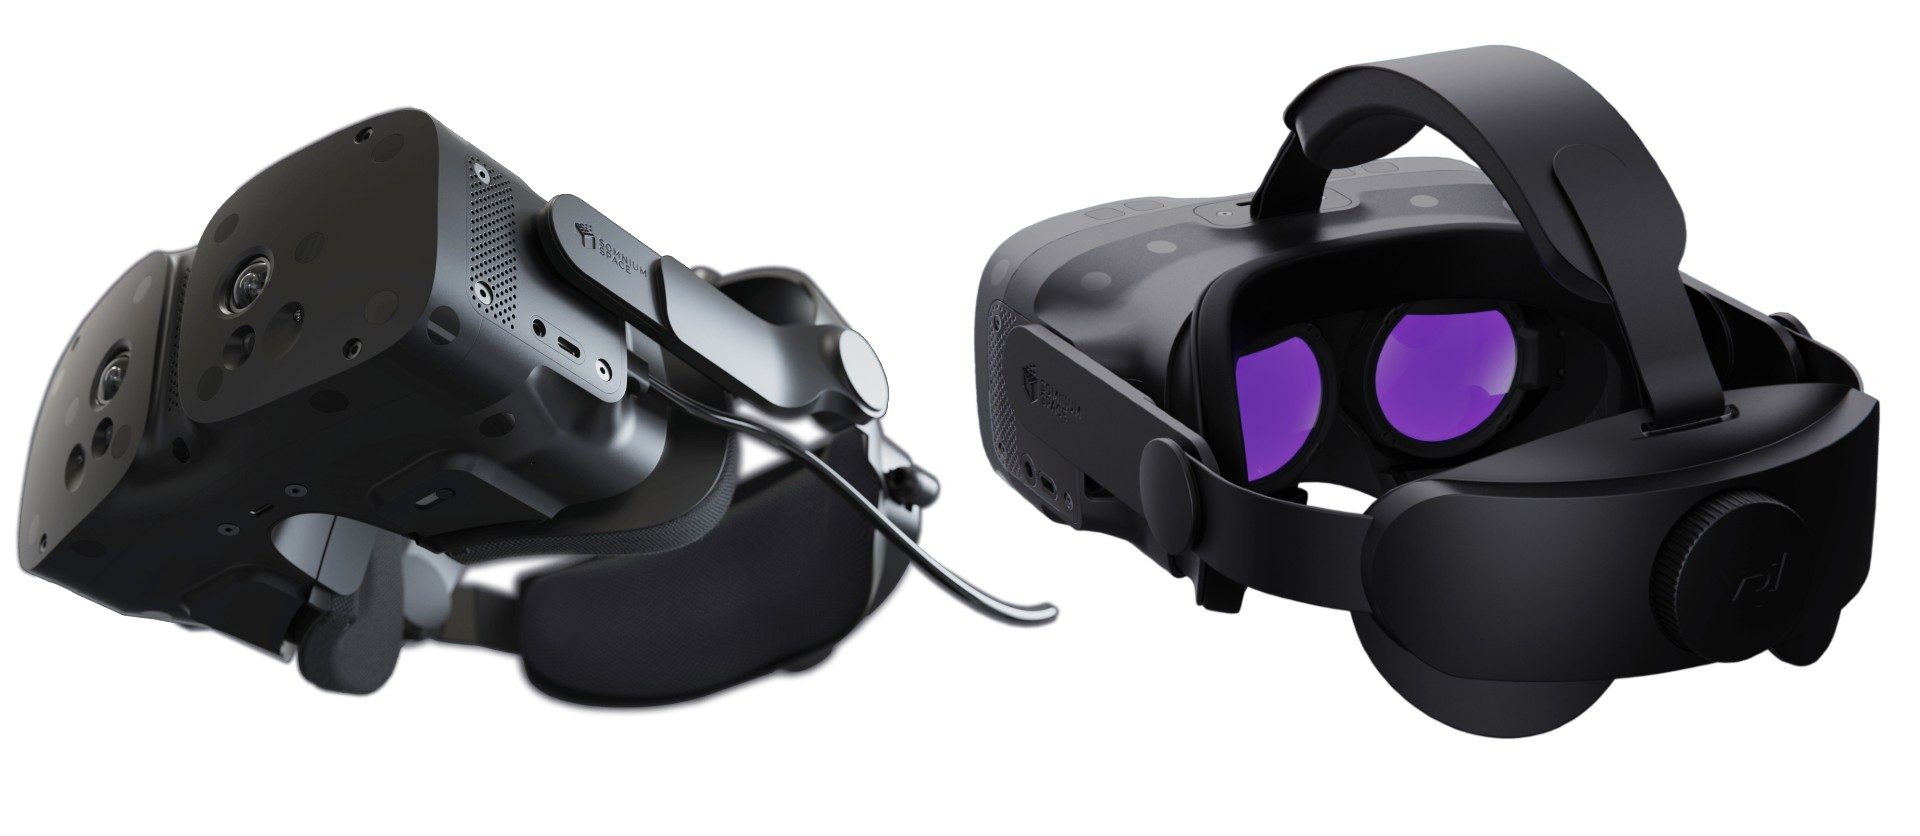 Близится к выпуску гарнитура Somnium VR1, сотрудничающая с производителем уникальных VR-контроллеров с сенсорным управлением пальцами